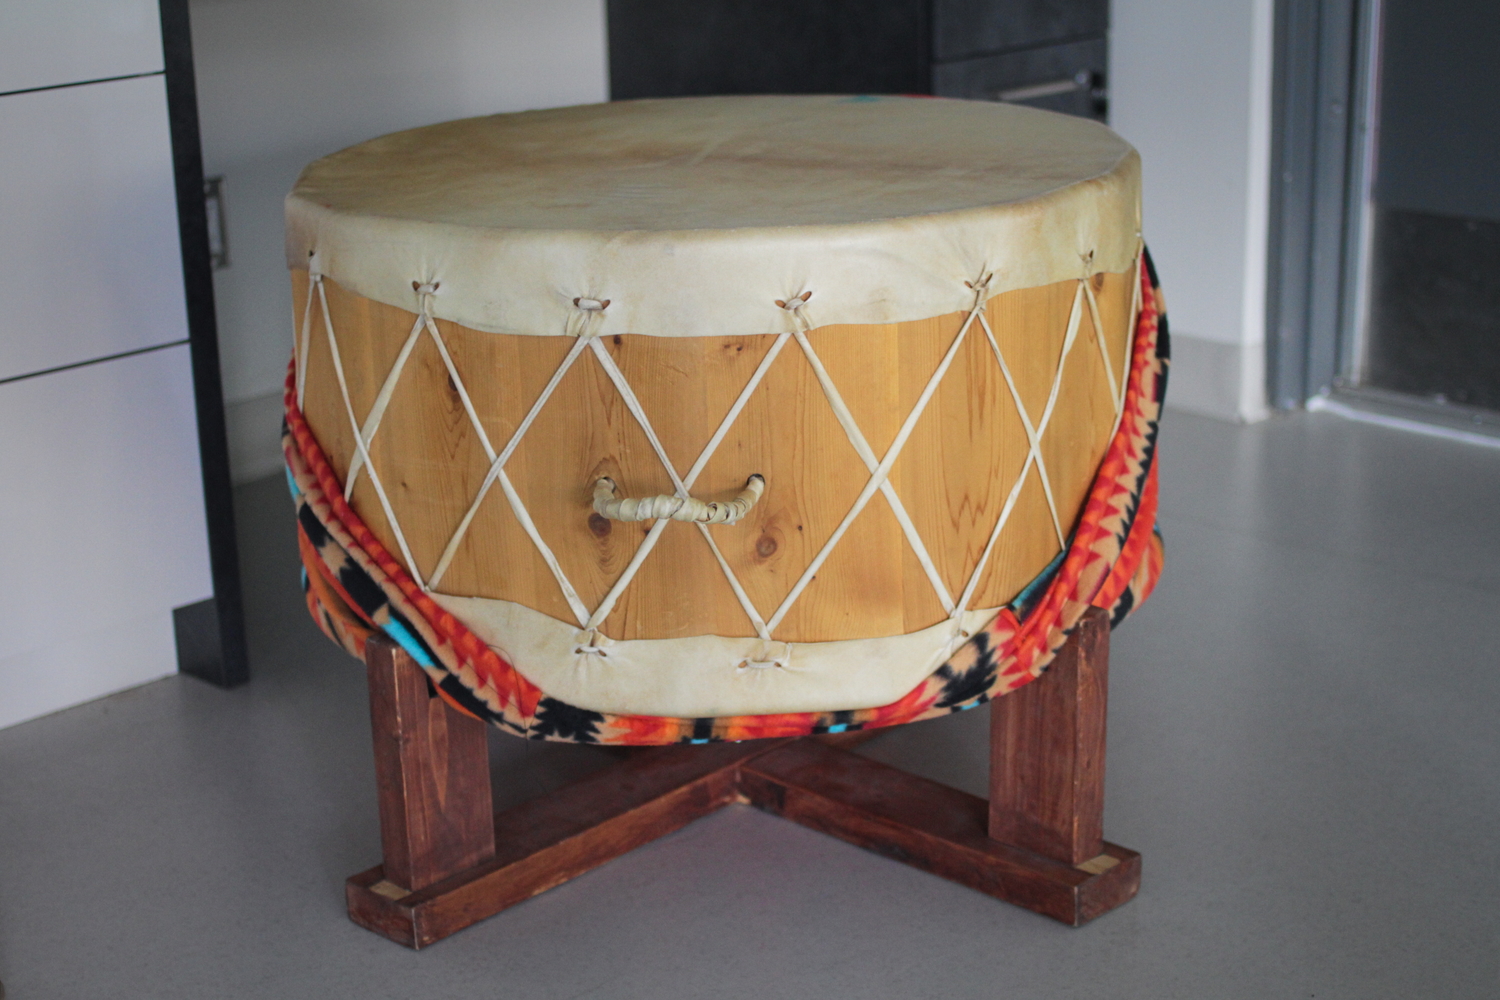 Les élèves ont des cours de musique. Ils utilisent des instruments traditionnels, comme le grand tambour.